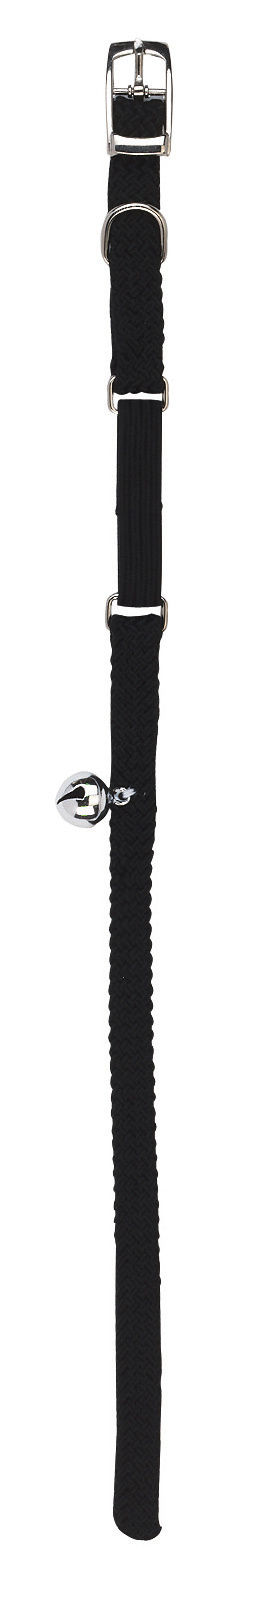 Katzenhalsband schwarz, 10mm x 30cm mit Gummizug